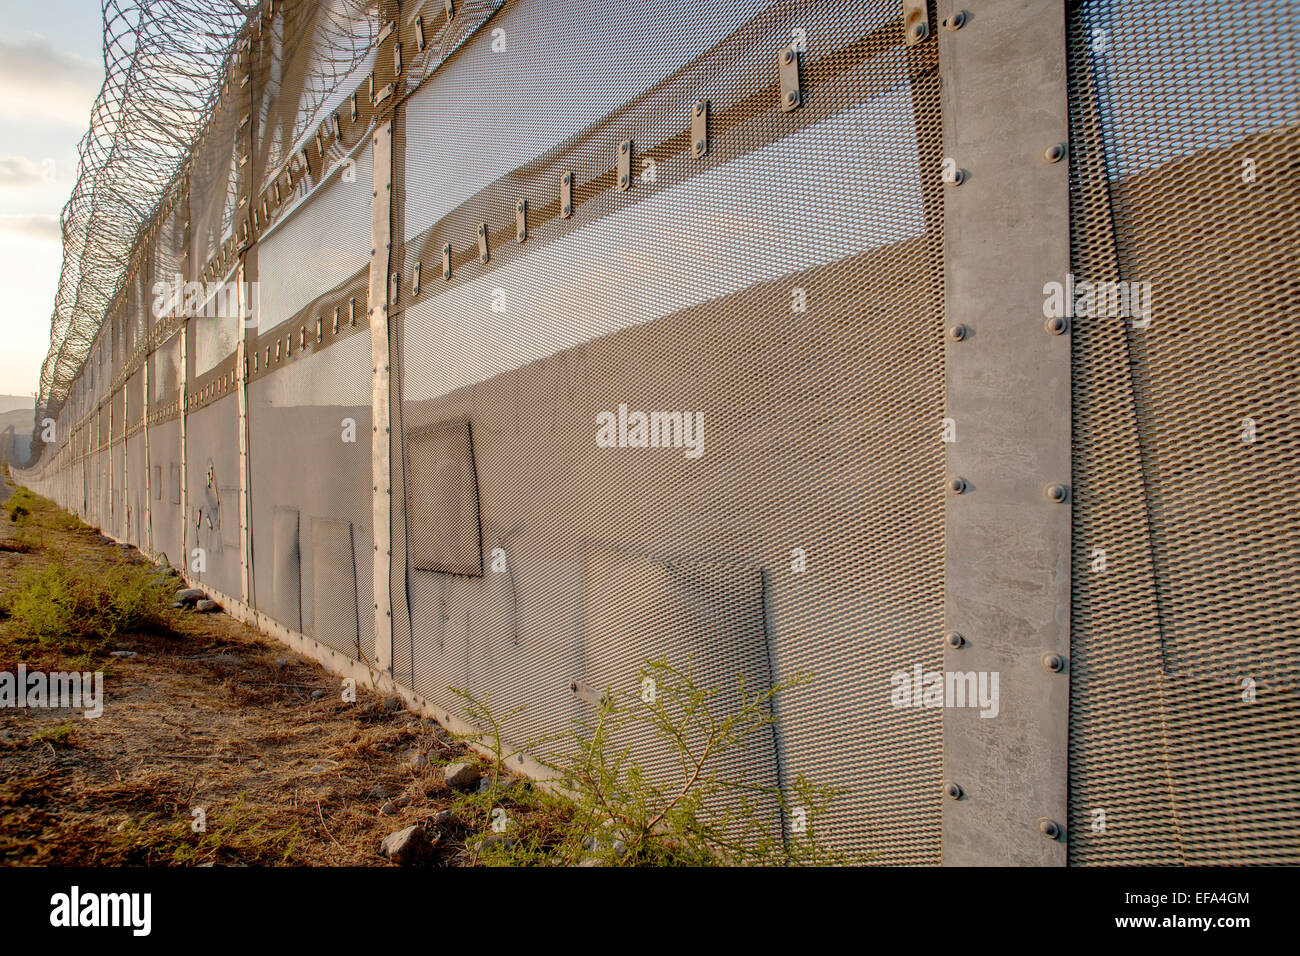 Corrigé des trous dans la clôture internationale sur la frontière États-Unis/Mexique en face de la Colonia Libertad district de Tijuana, Mexique voir les endroits où les immigrants illégaux ont tenté d'entrer aux États-Unis Remarque barbelés sur le dessus de la clôture. Banque D'Images